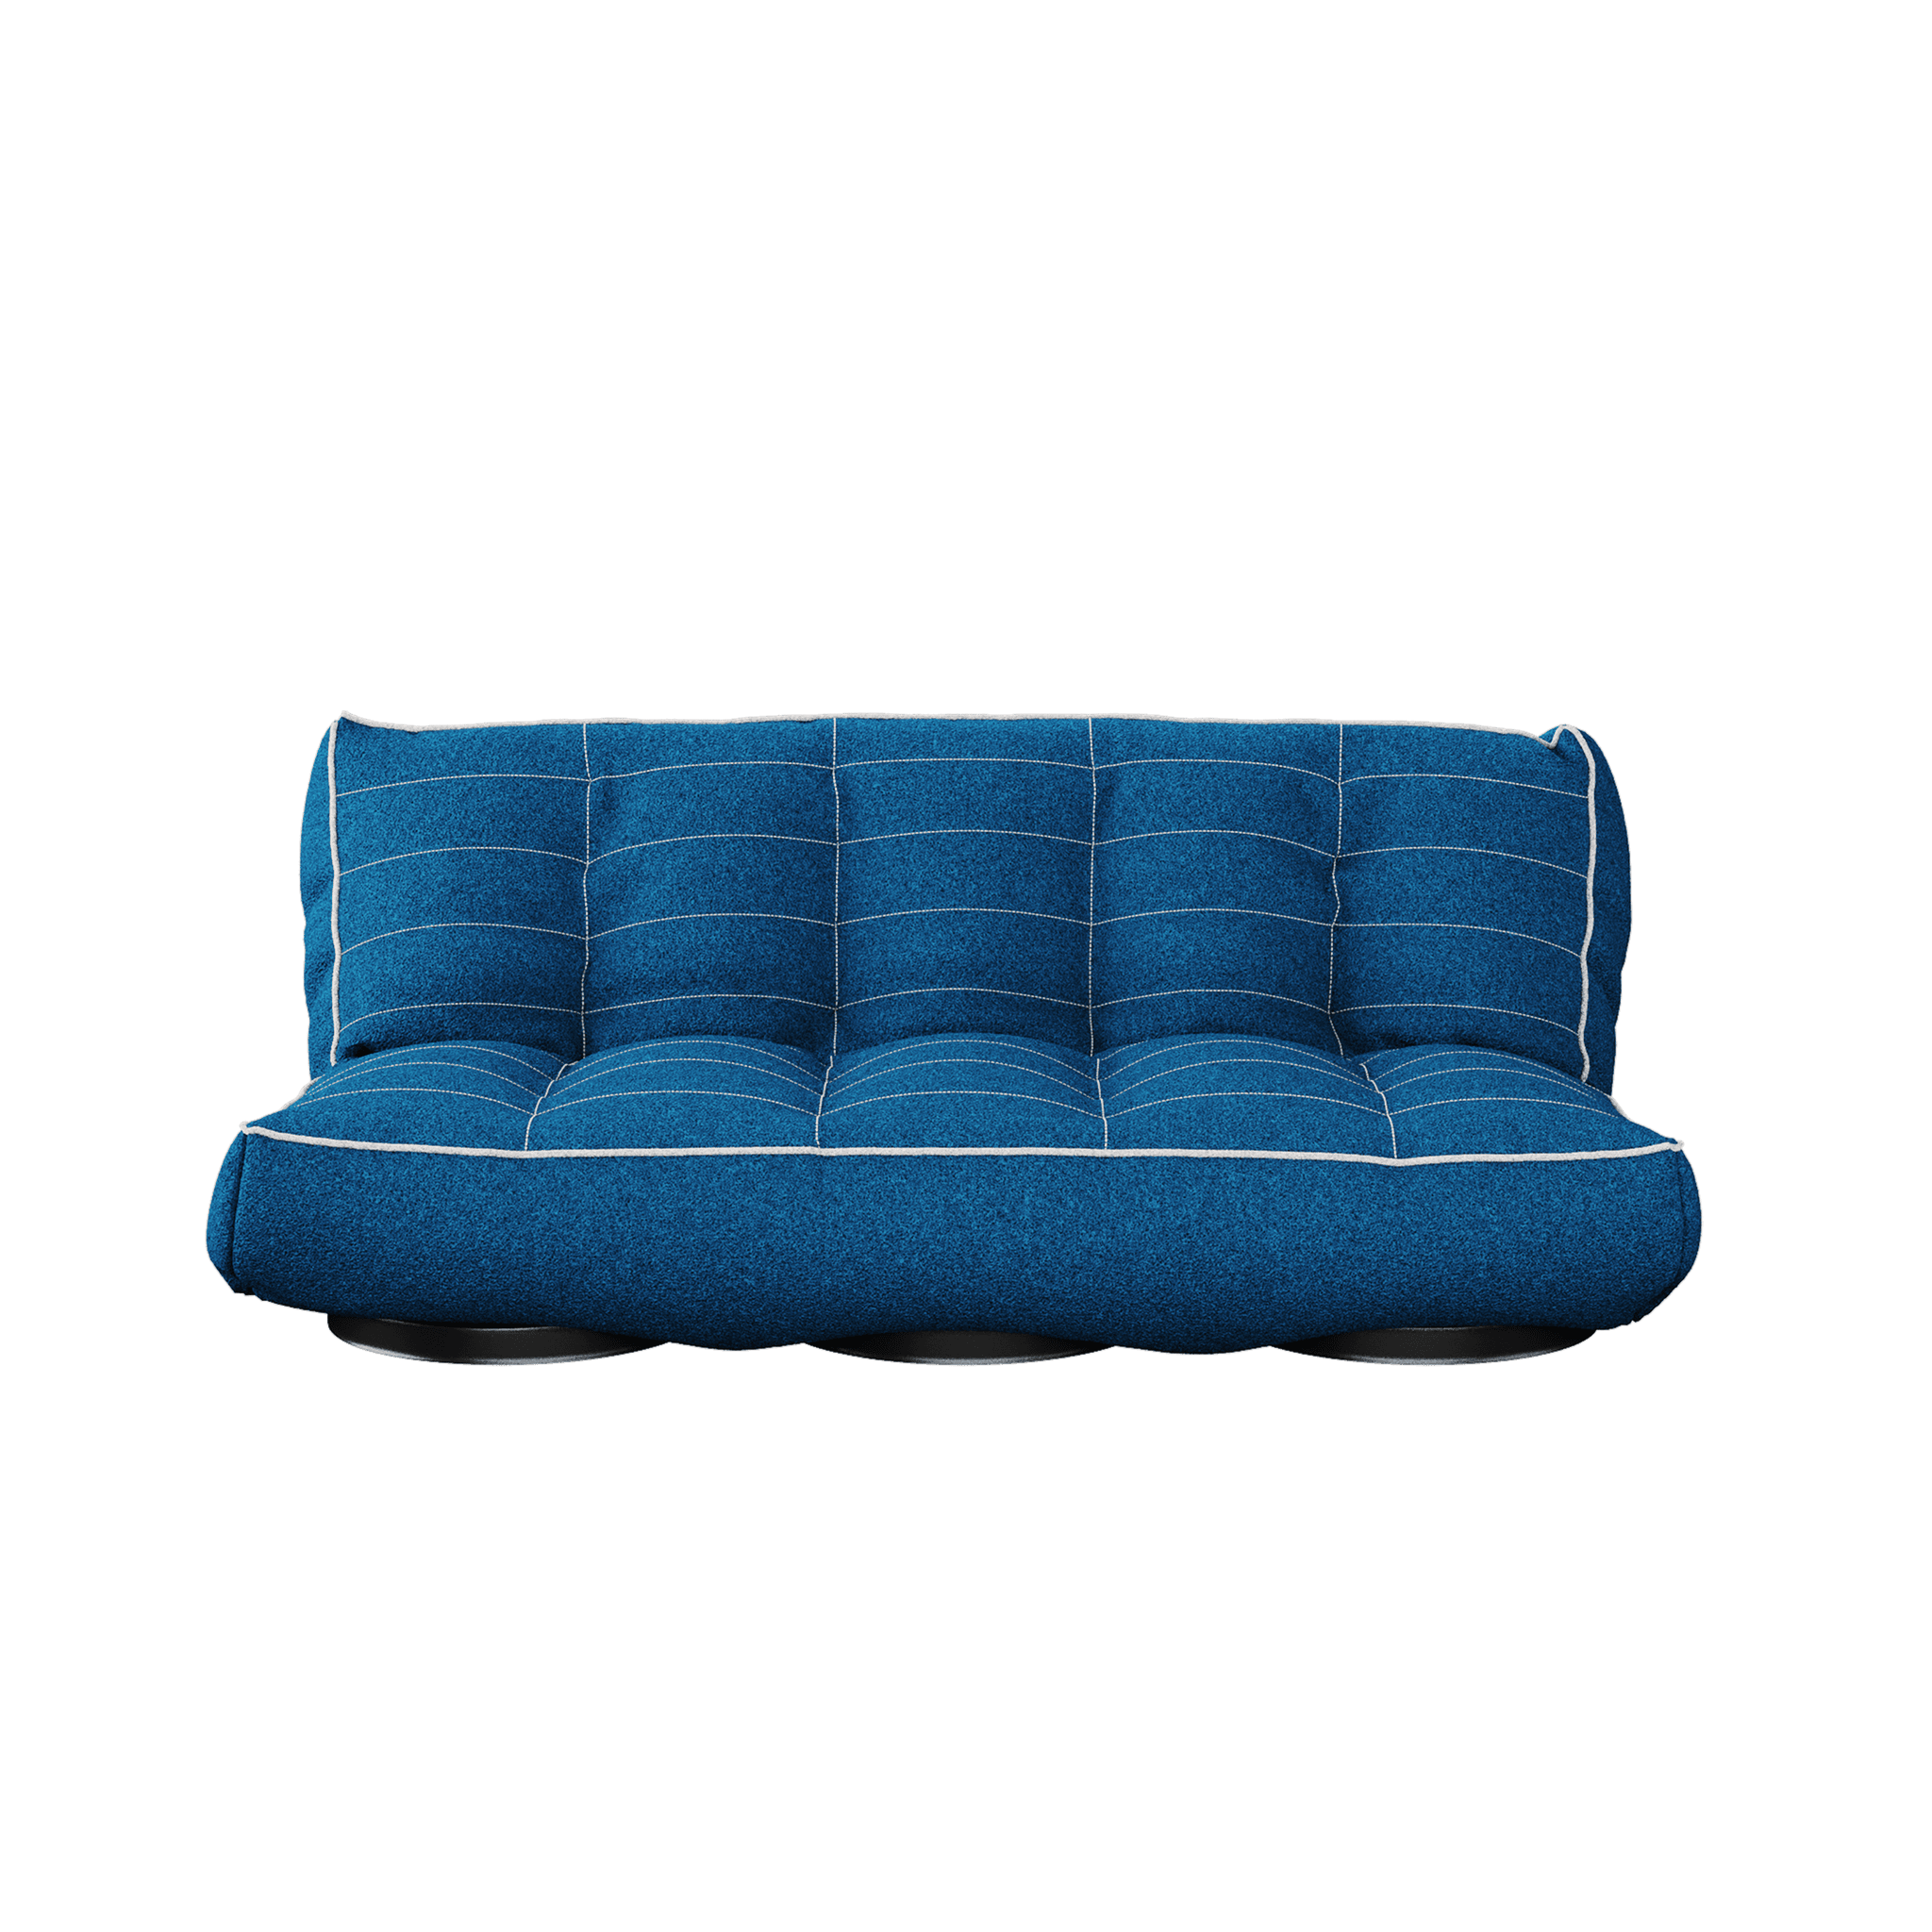 Foil Sofa by Hommés Studio